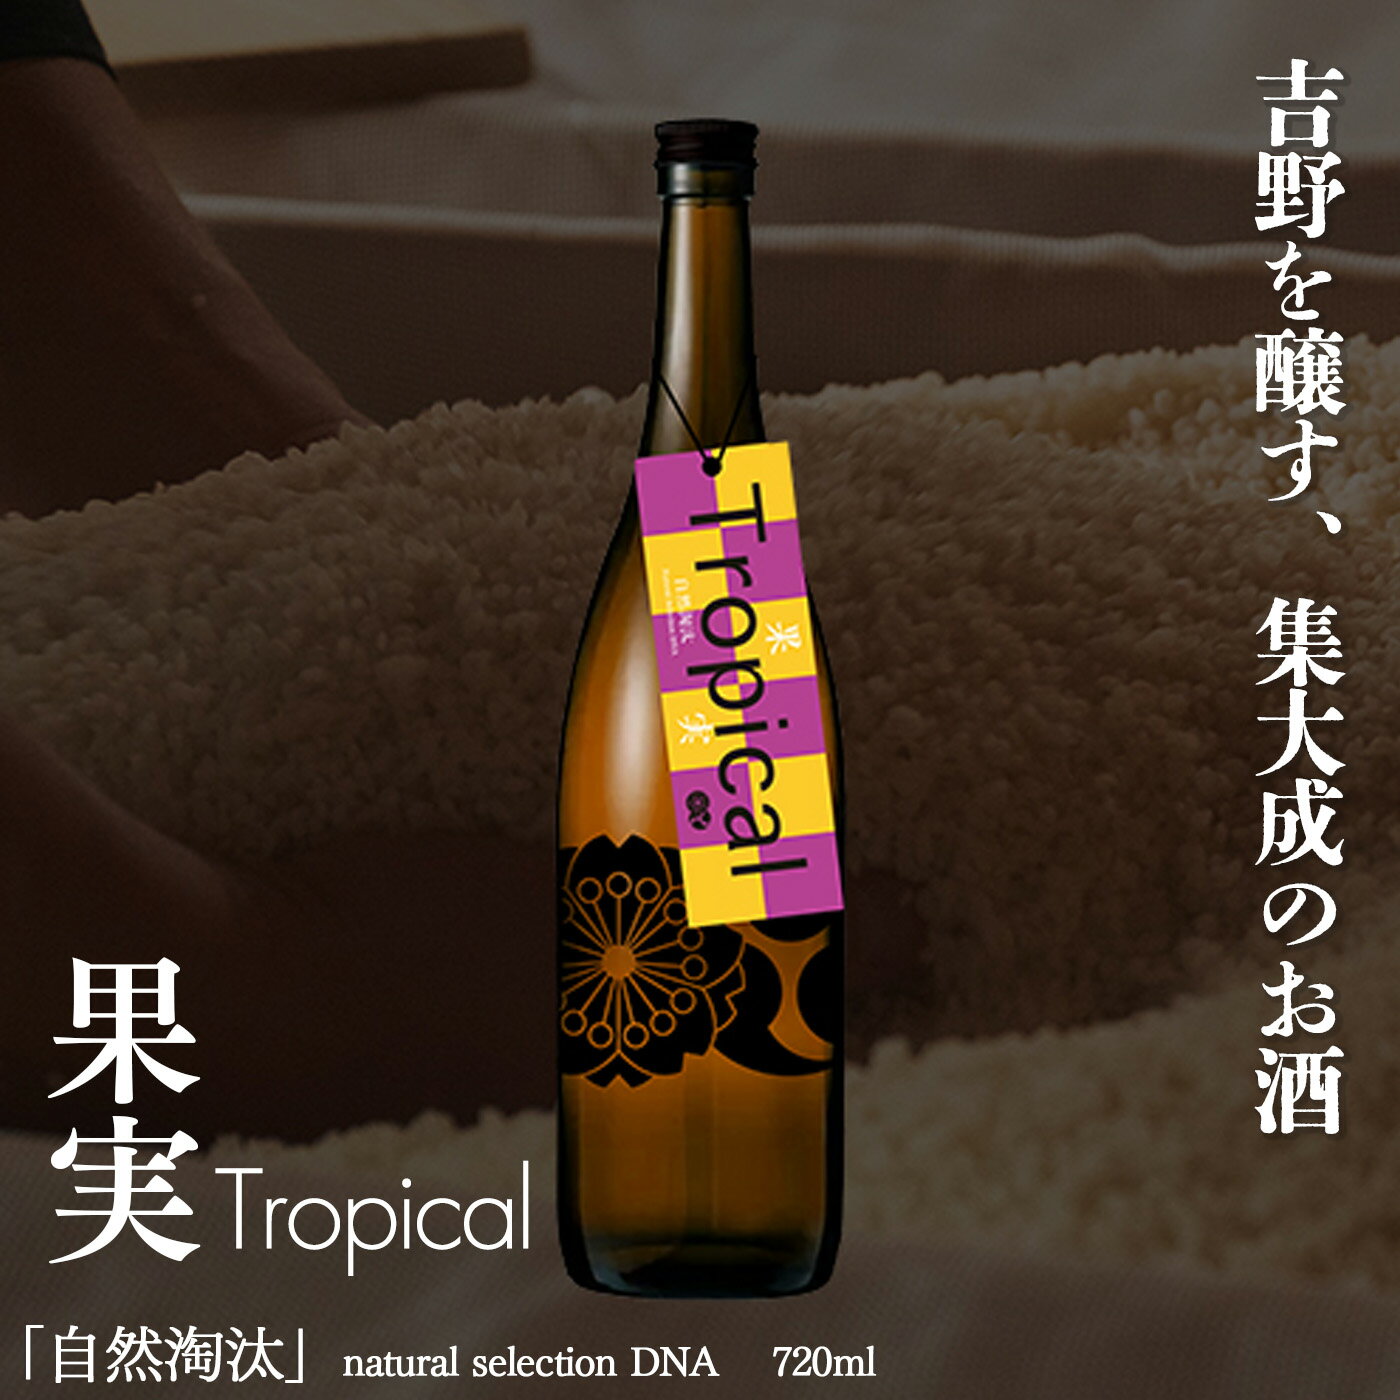 【ふるさと納税】自然淘汰 natural selection DNA Tropical果実 日本酒 酒 美吉野酒造 奈良県 吉野町